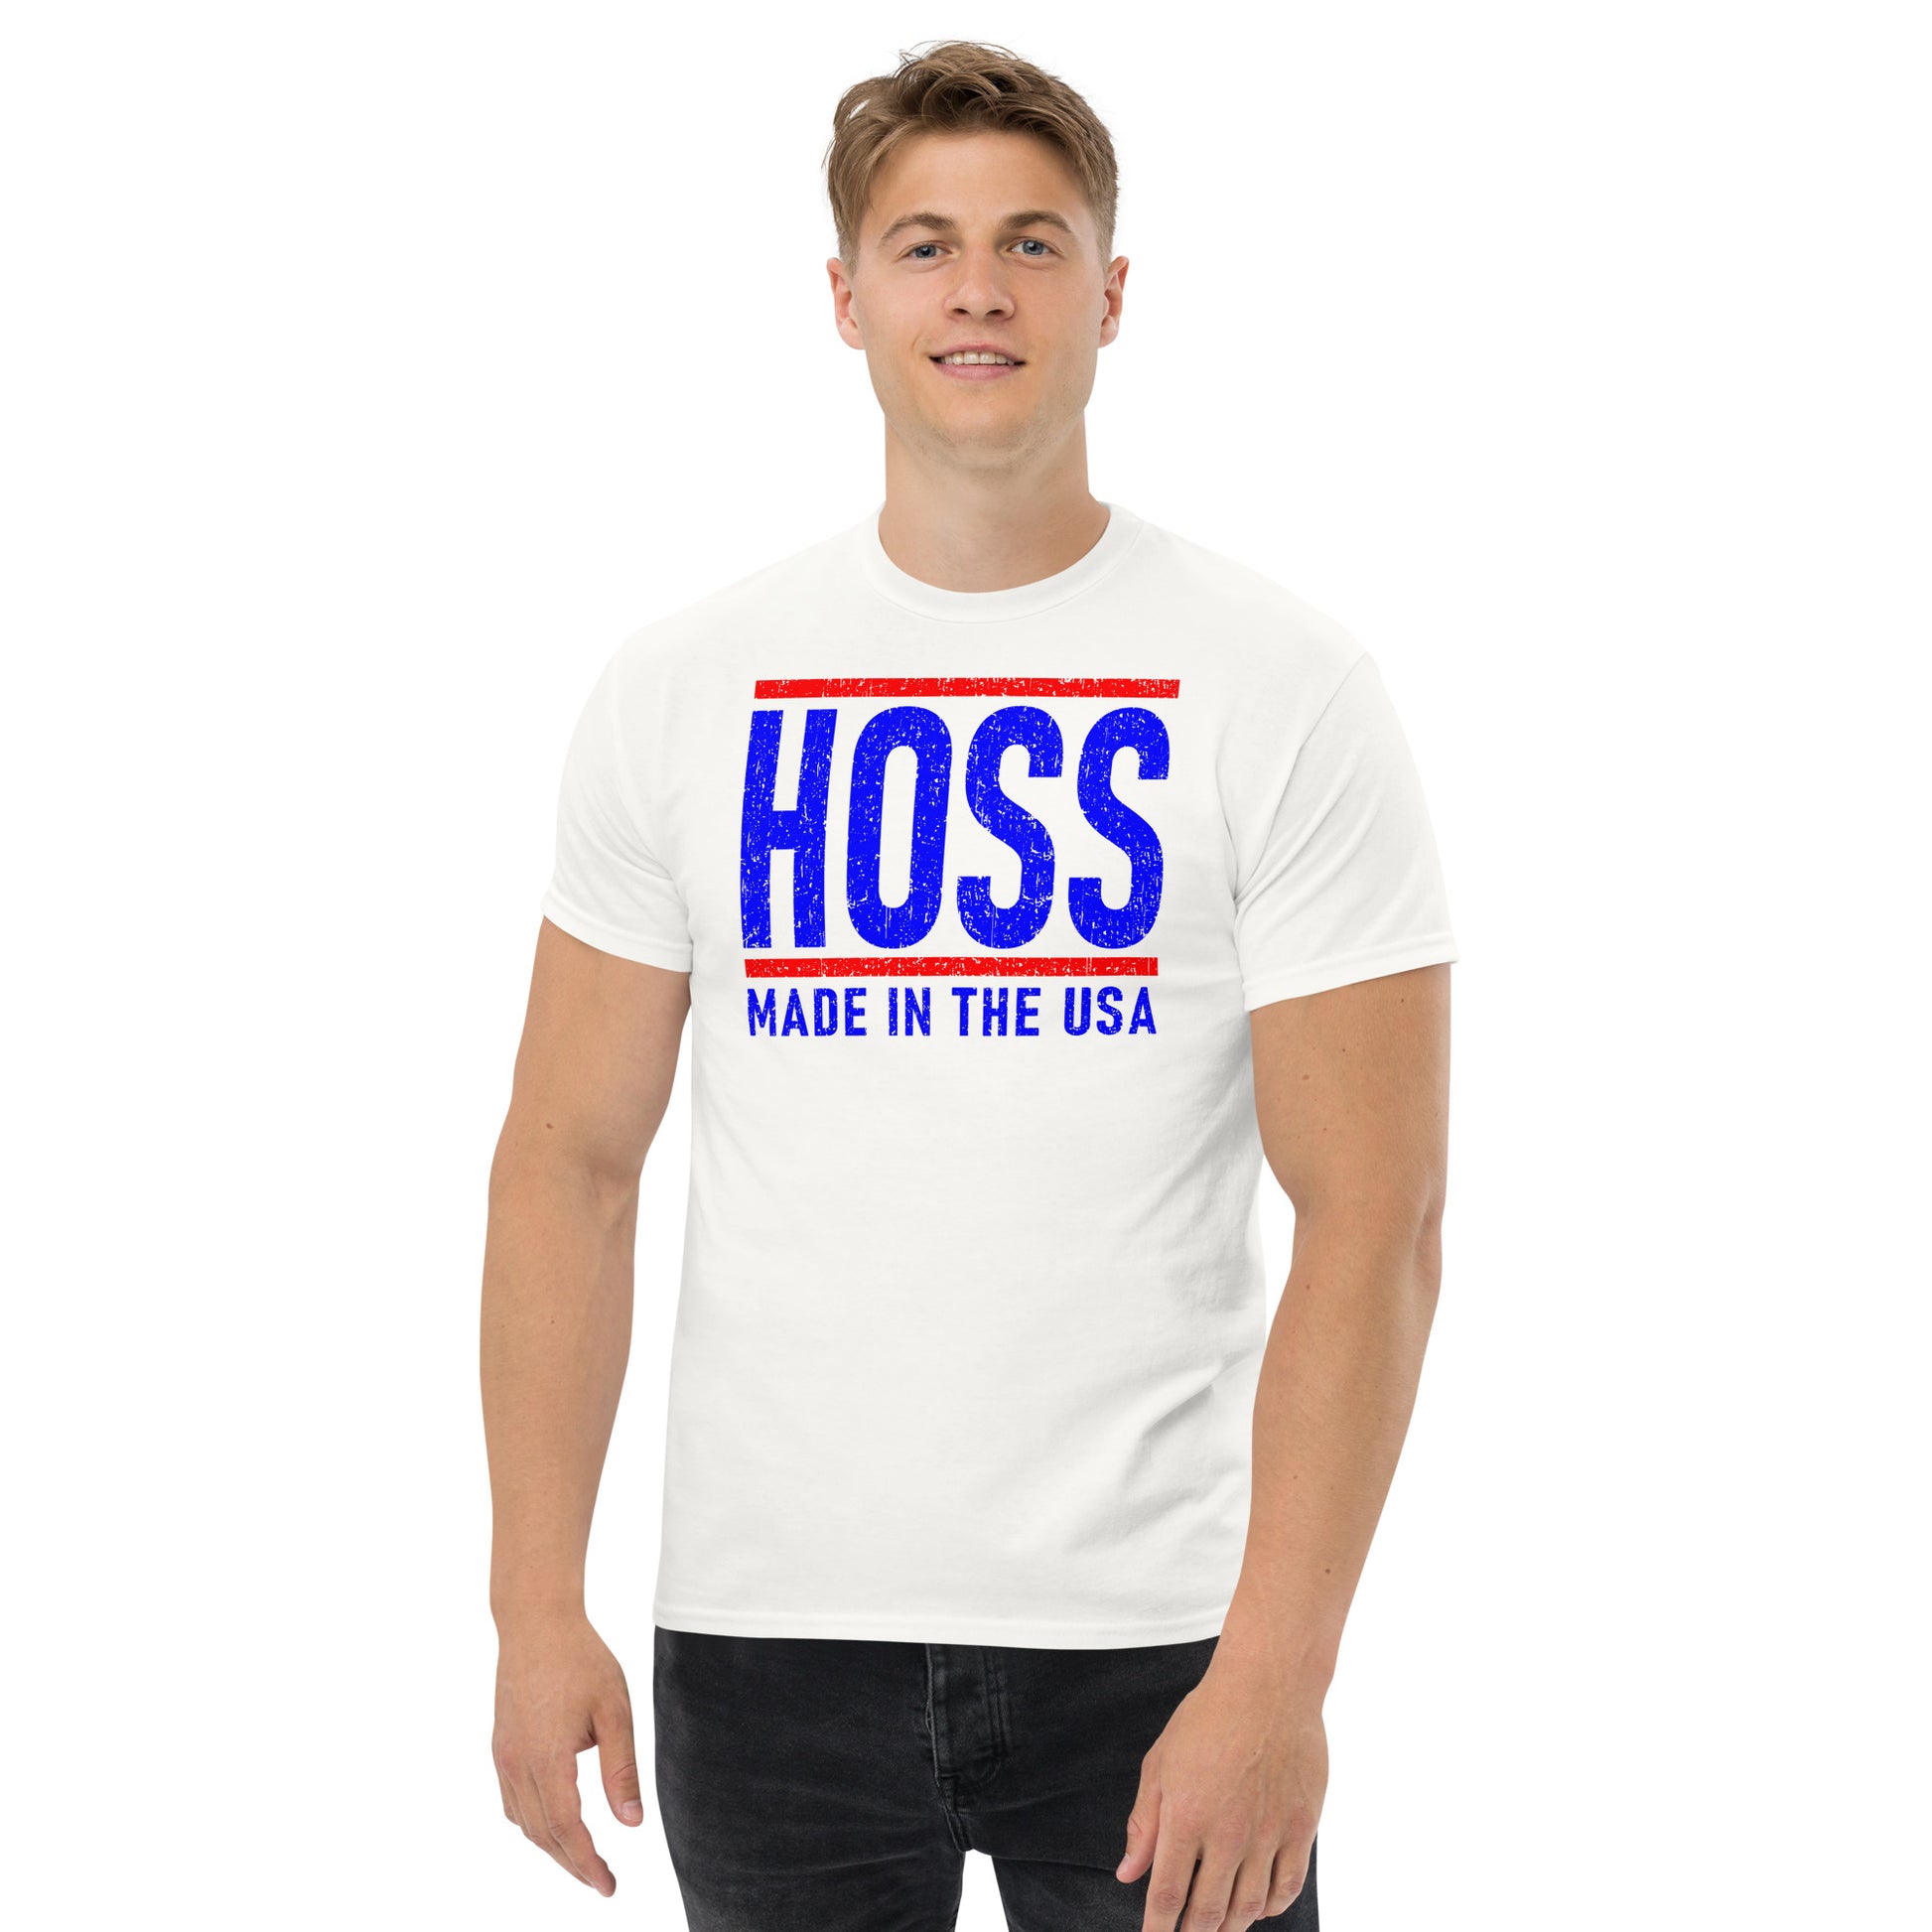 Hoss men's white t-shirt